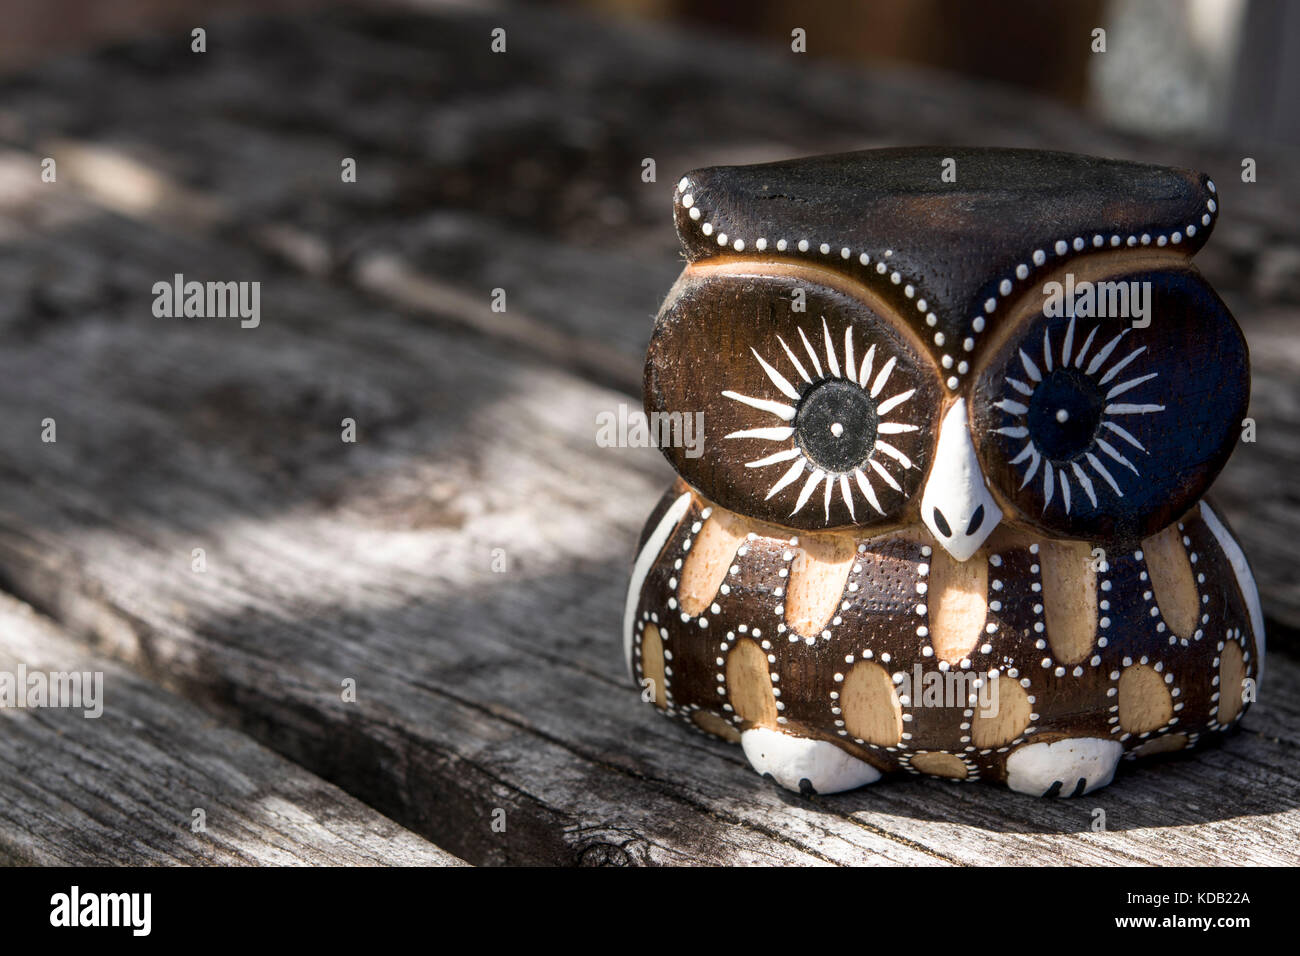 Peu de graisse cute owl en bois figure libre avec banc en bois historique Banque D'Images